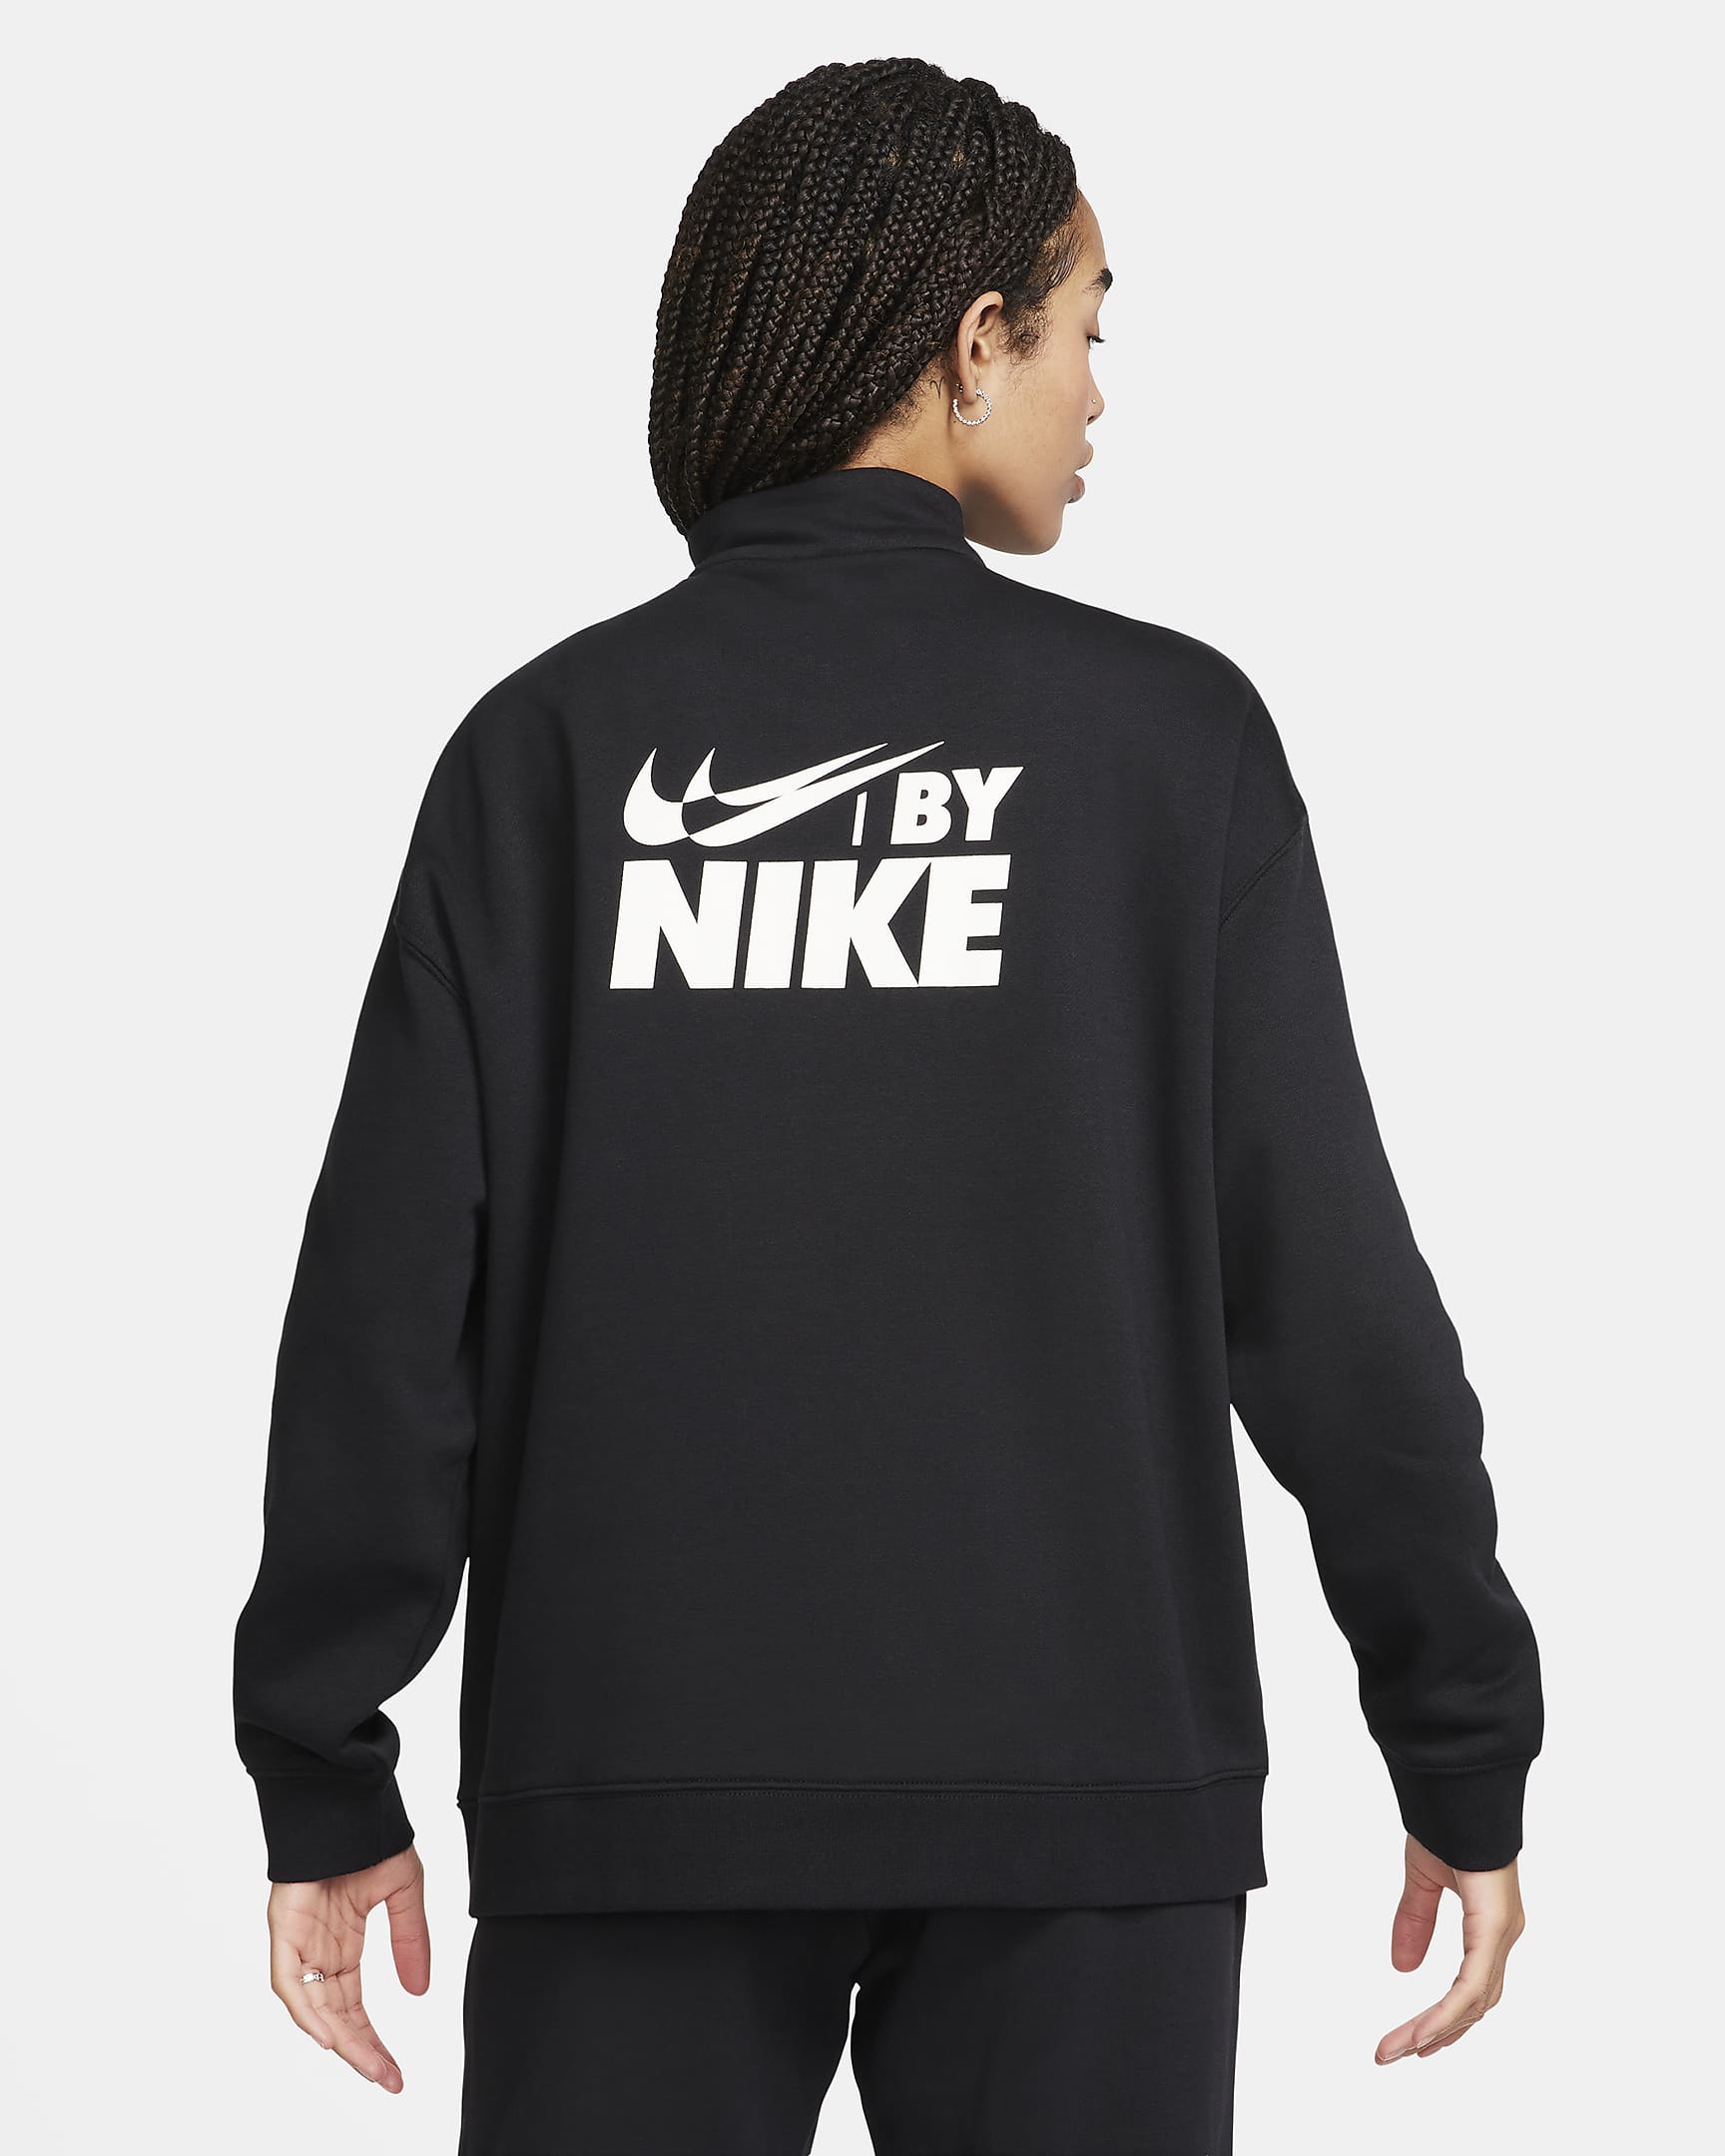 Nike Sportswear Women's Oversized 1/4-Zip Fleece Top - Black/Sail